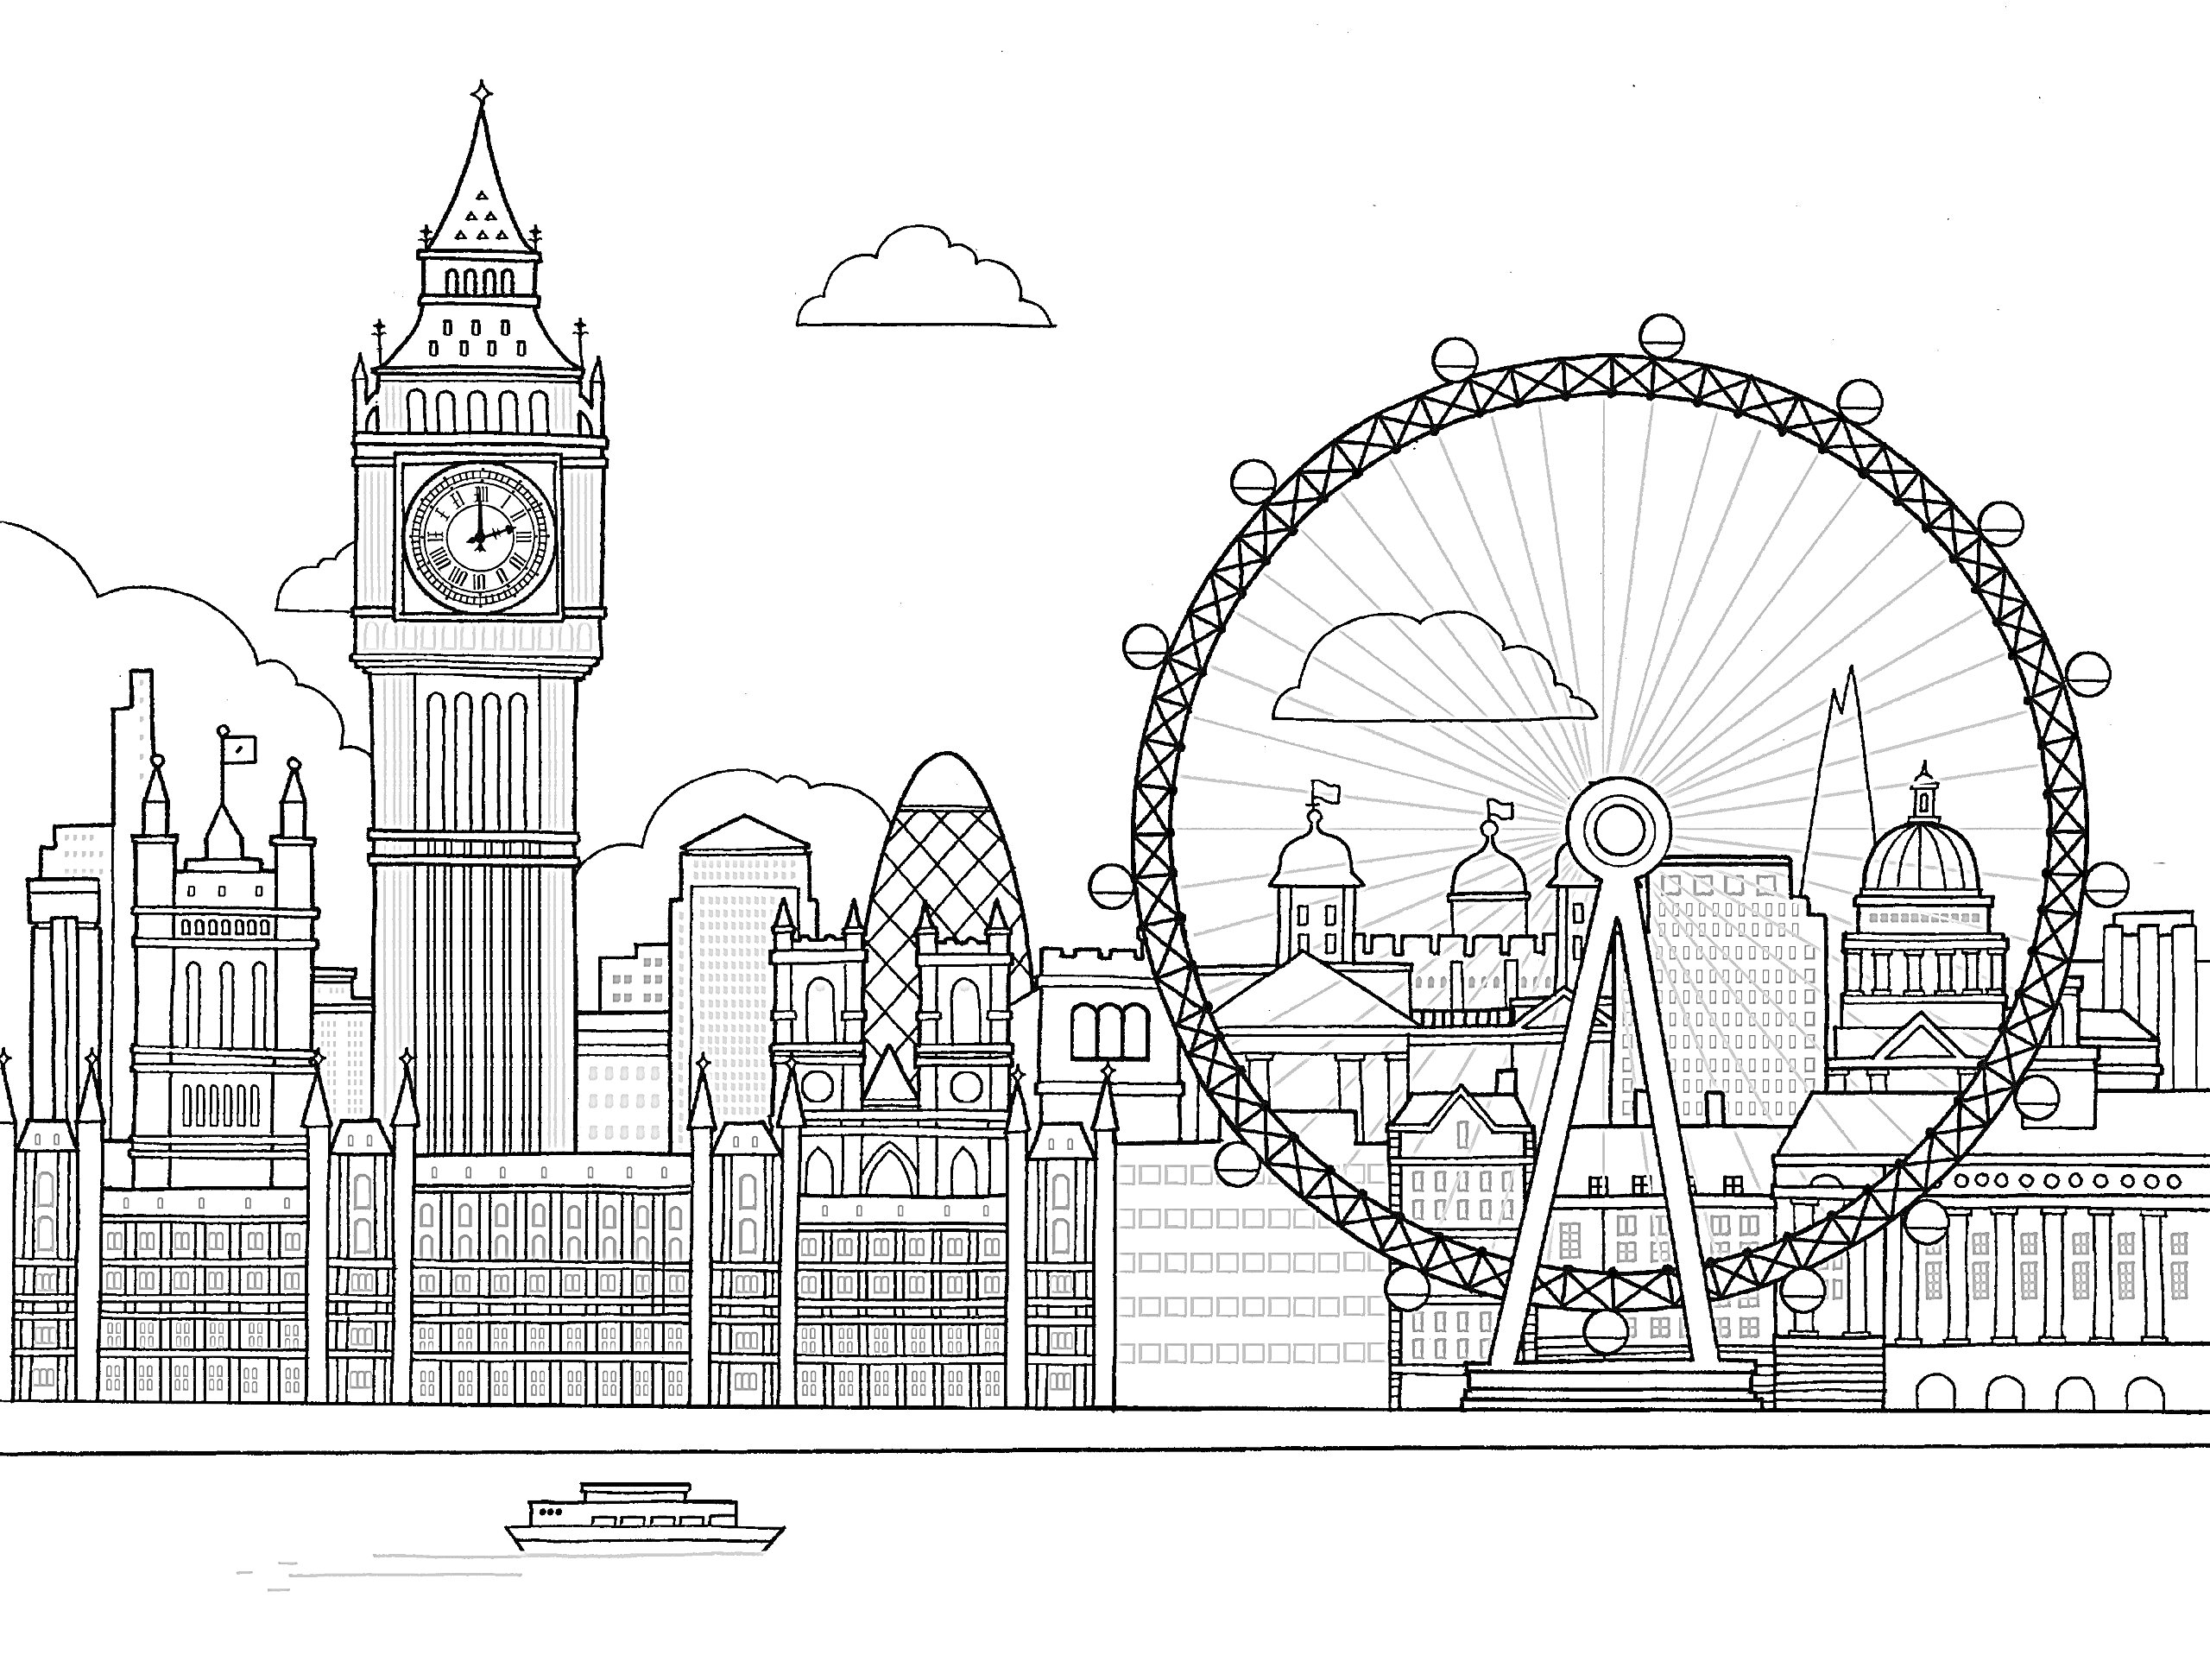 Лондонский пейзаж со зданиями Вестминстерского дворца, часовой башней (Биг Бен), колёсом обозрения (Лондонский глаз), небоскрёбами, рекой Темзой и лодкой